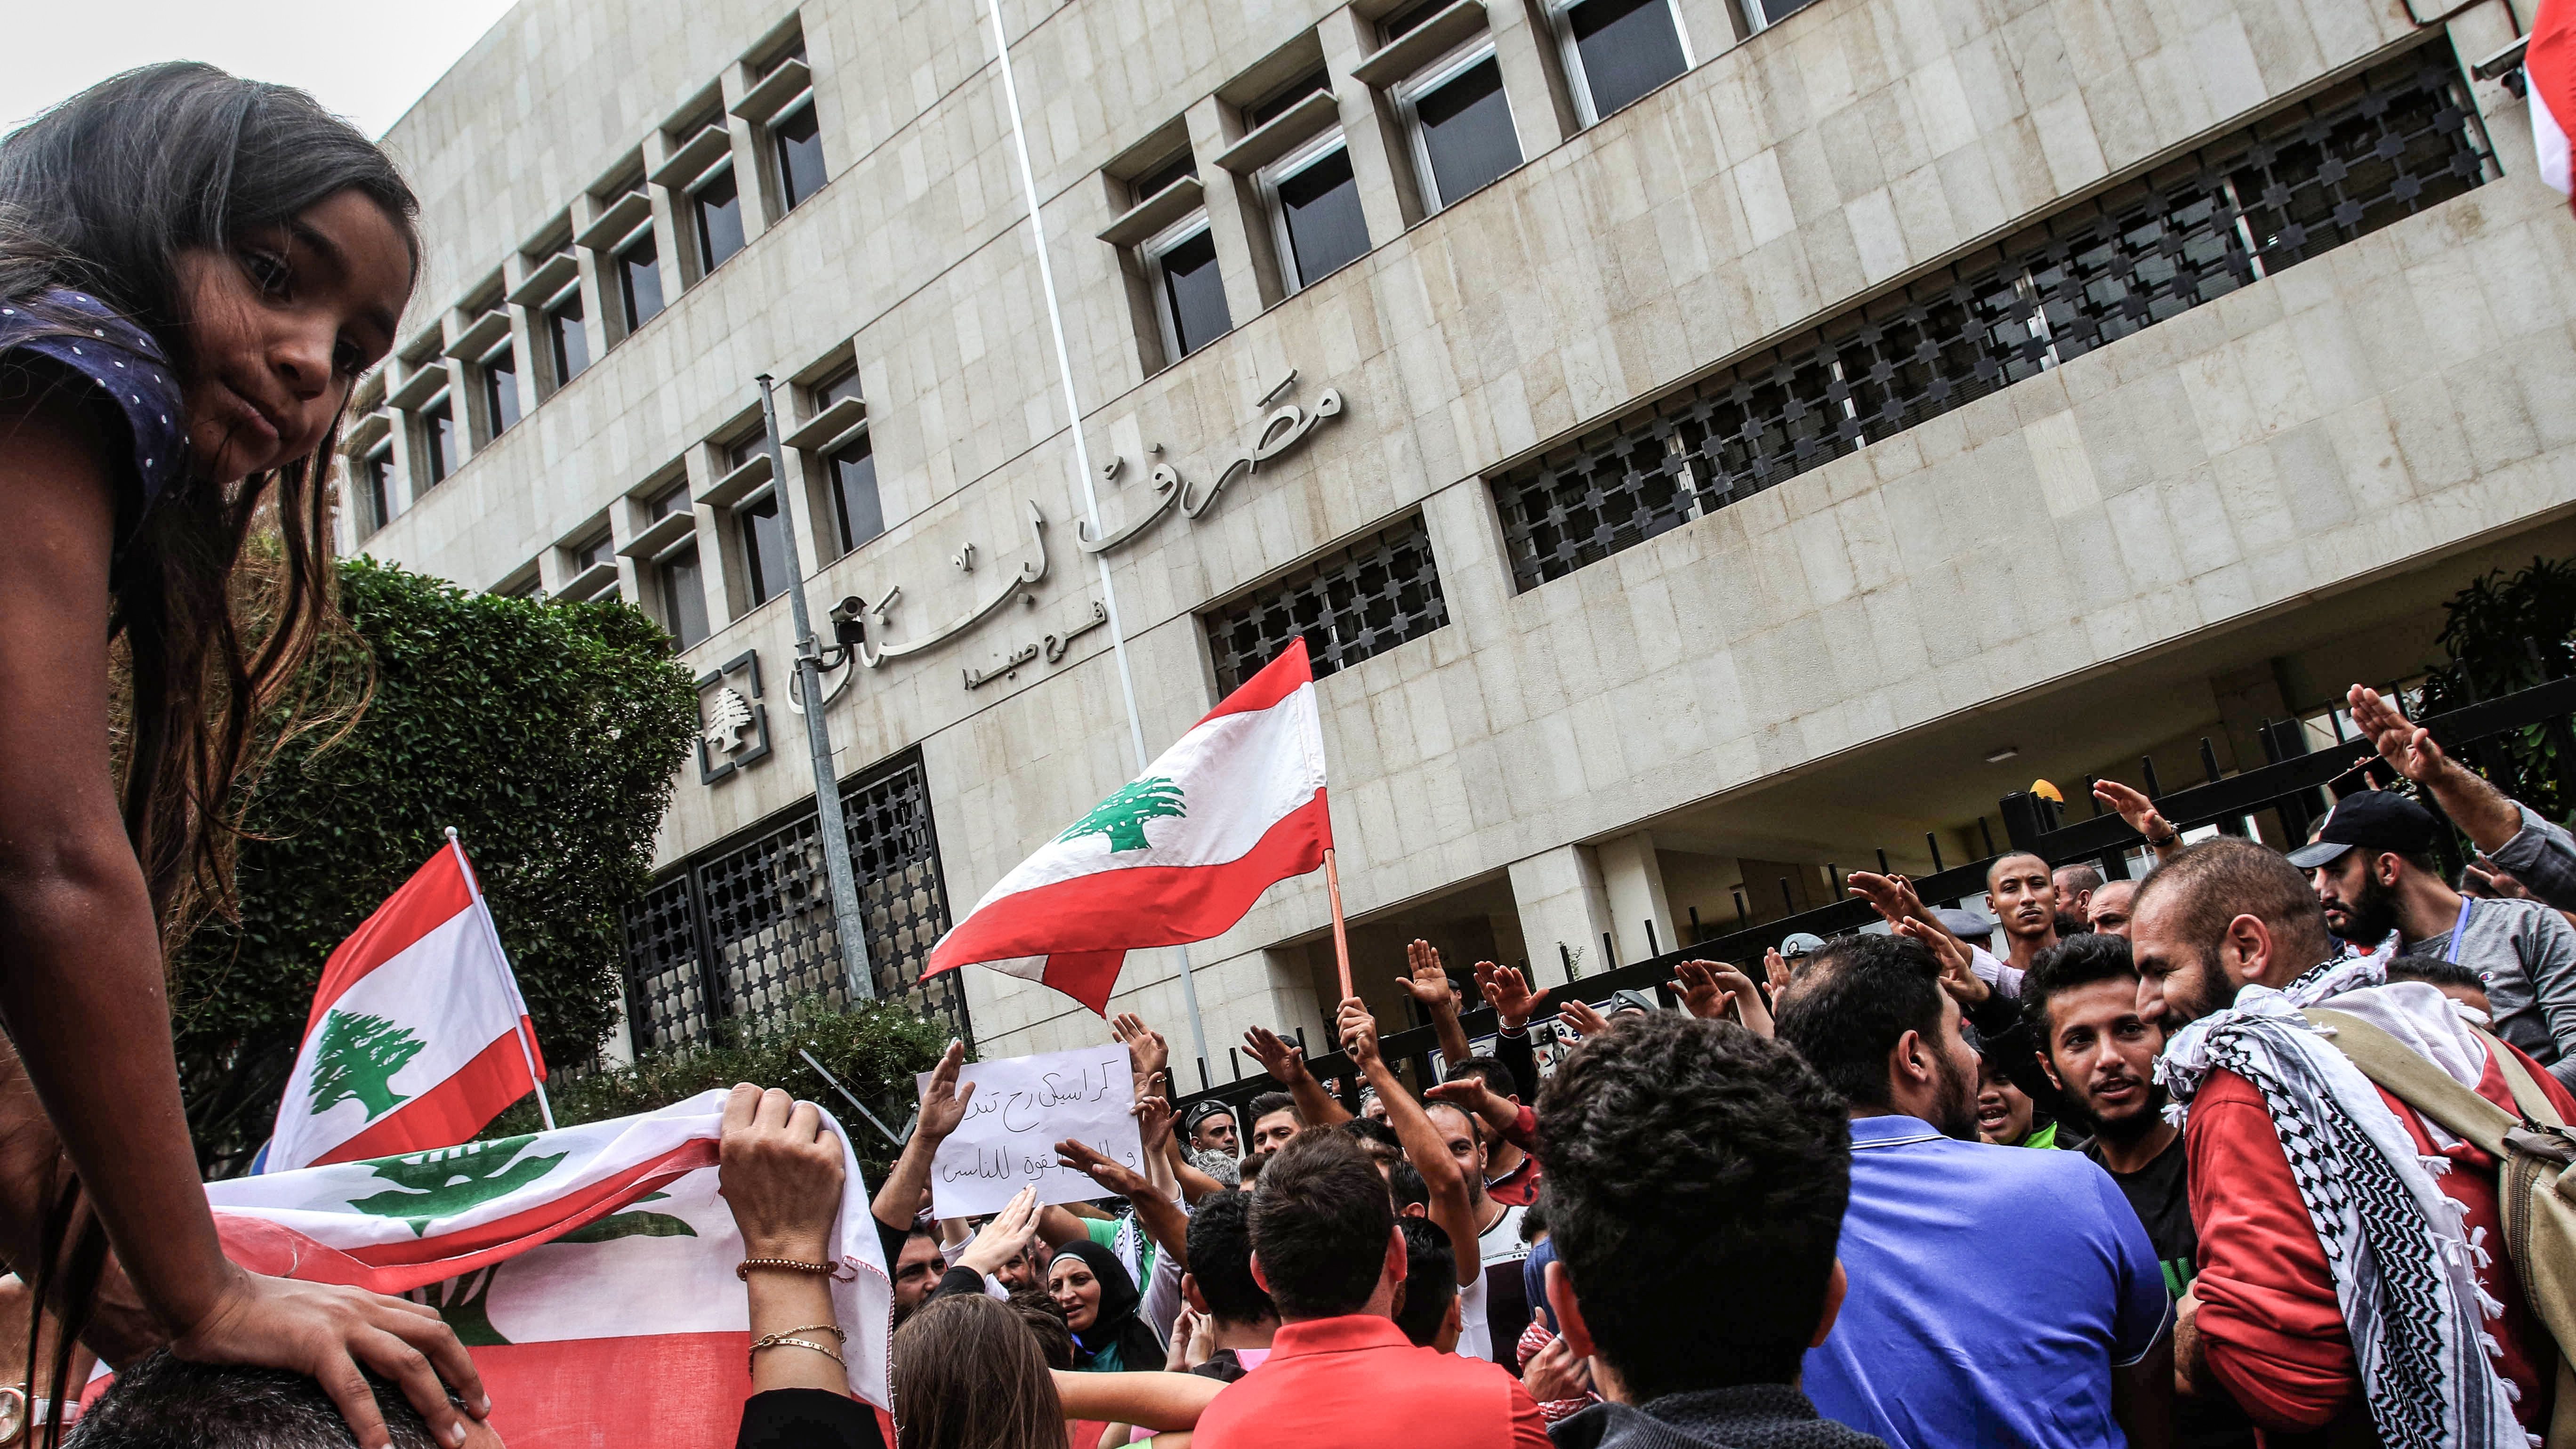 Protests Worsen Lebanon’s Economic Crisis